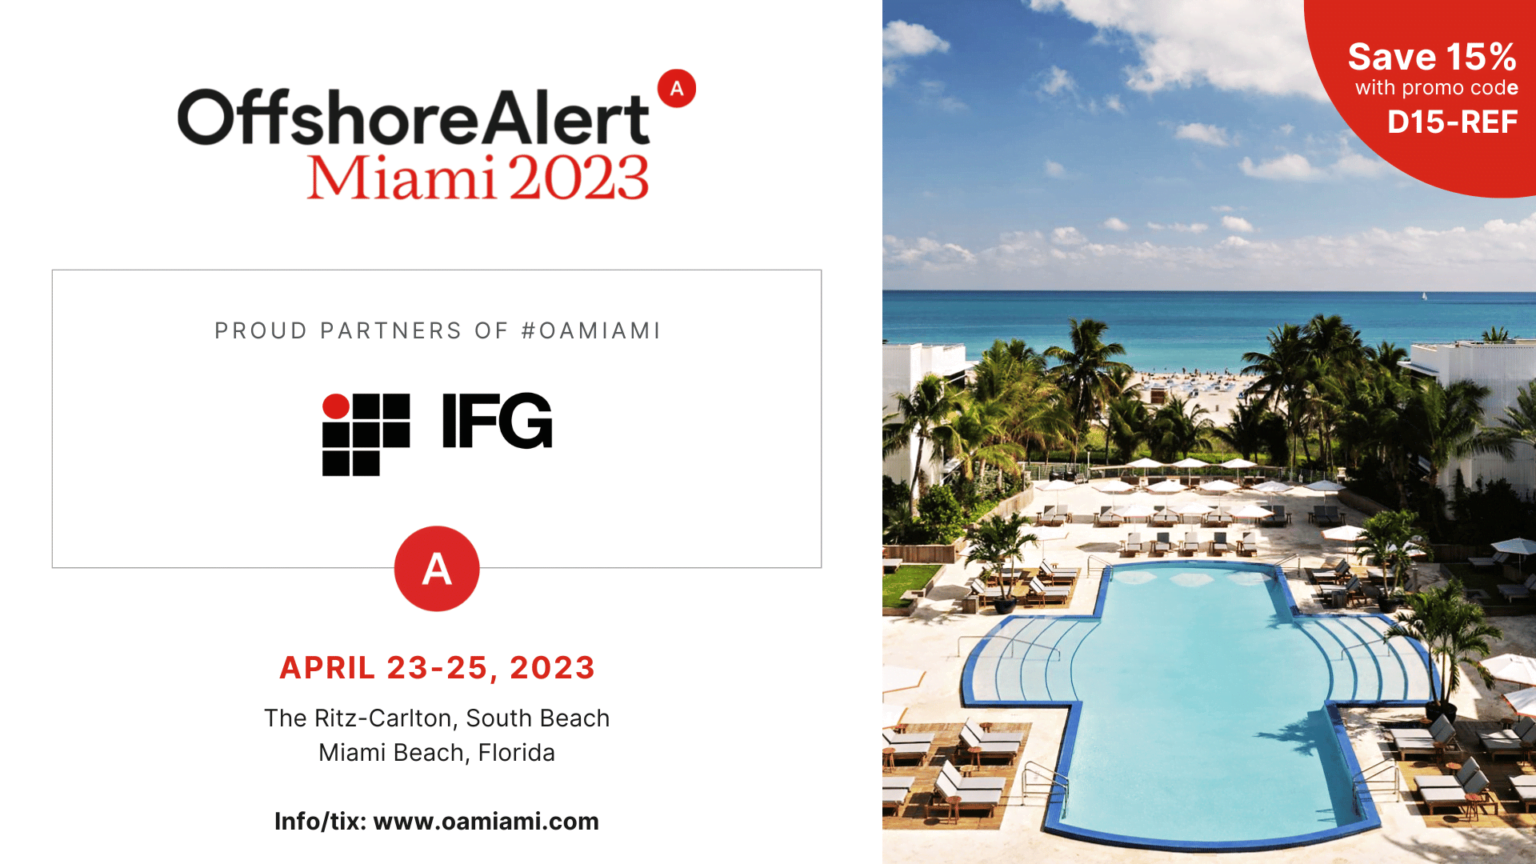 OffshoreAlert Miami 2023! International Fraud Group